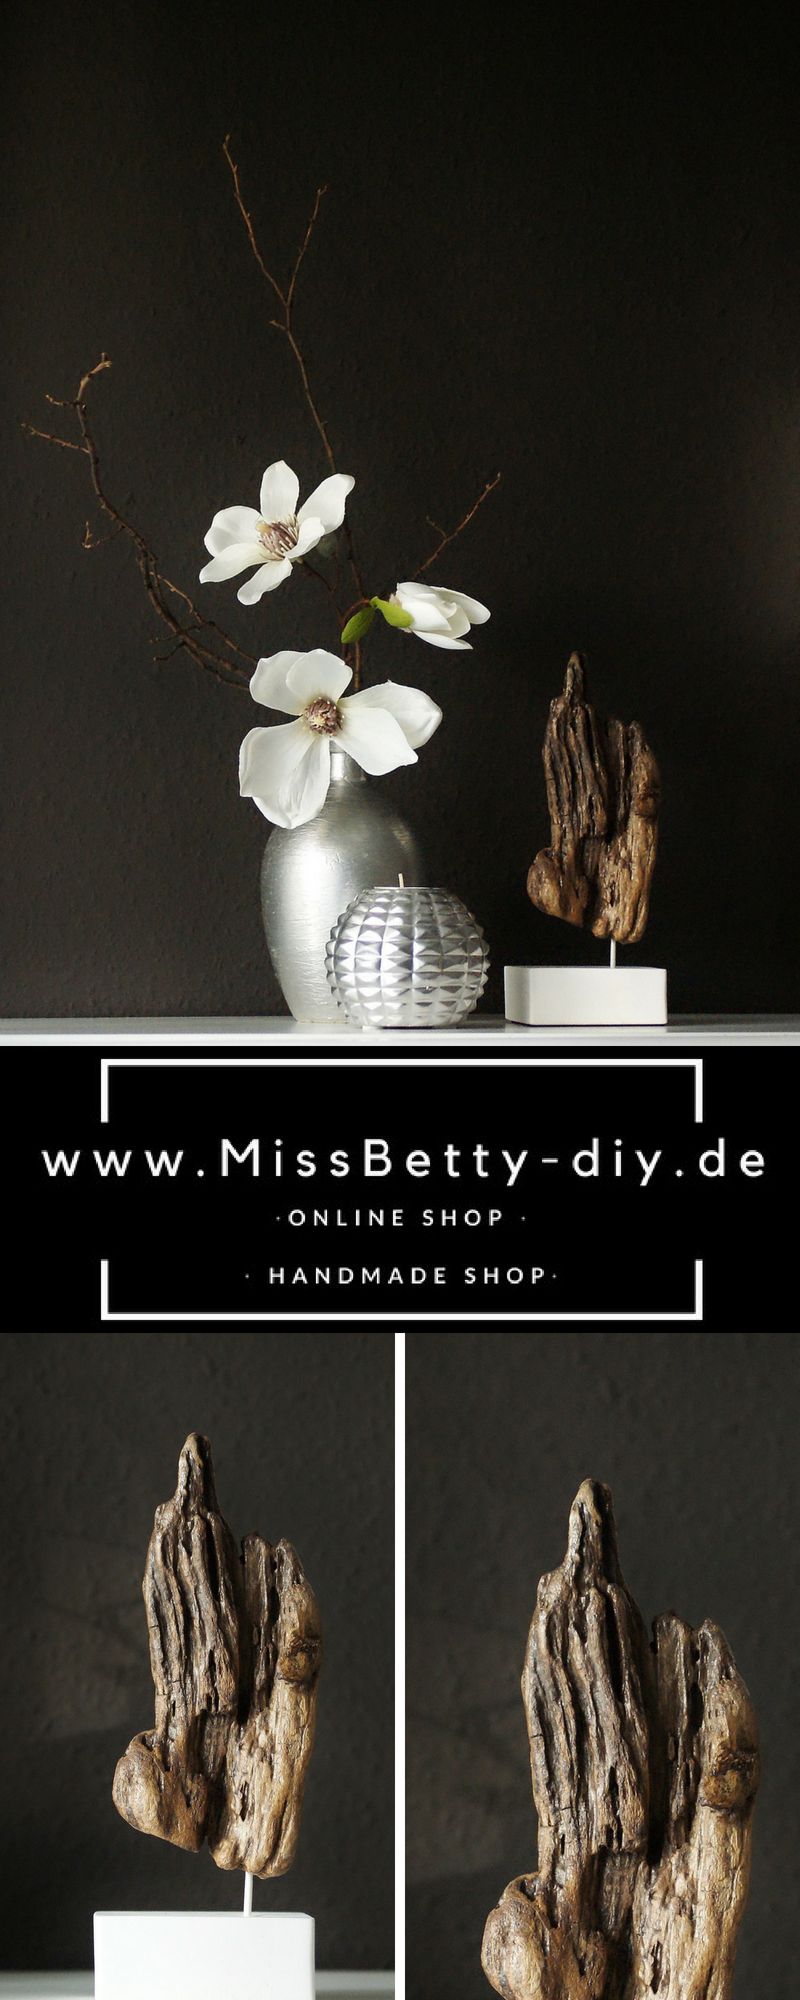 Deko Shop Online Best Of Shop the Look Deko Treibholz Skulptur Auf Einem Weißen